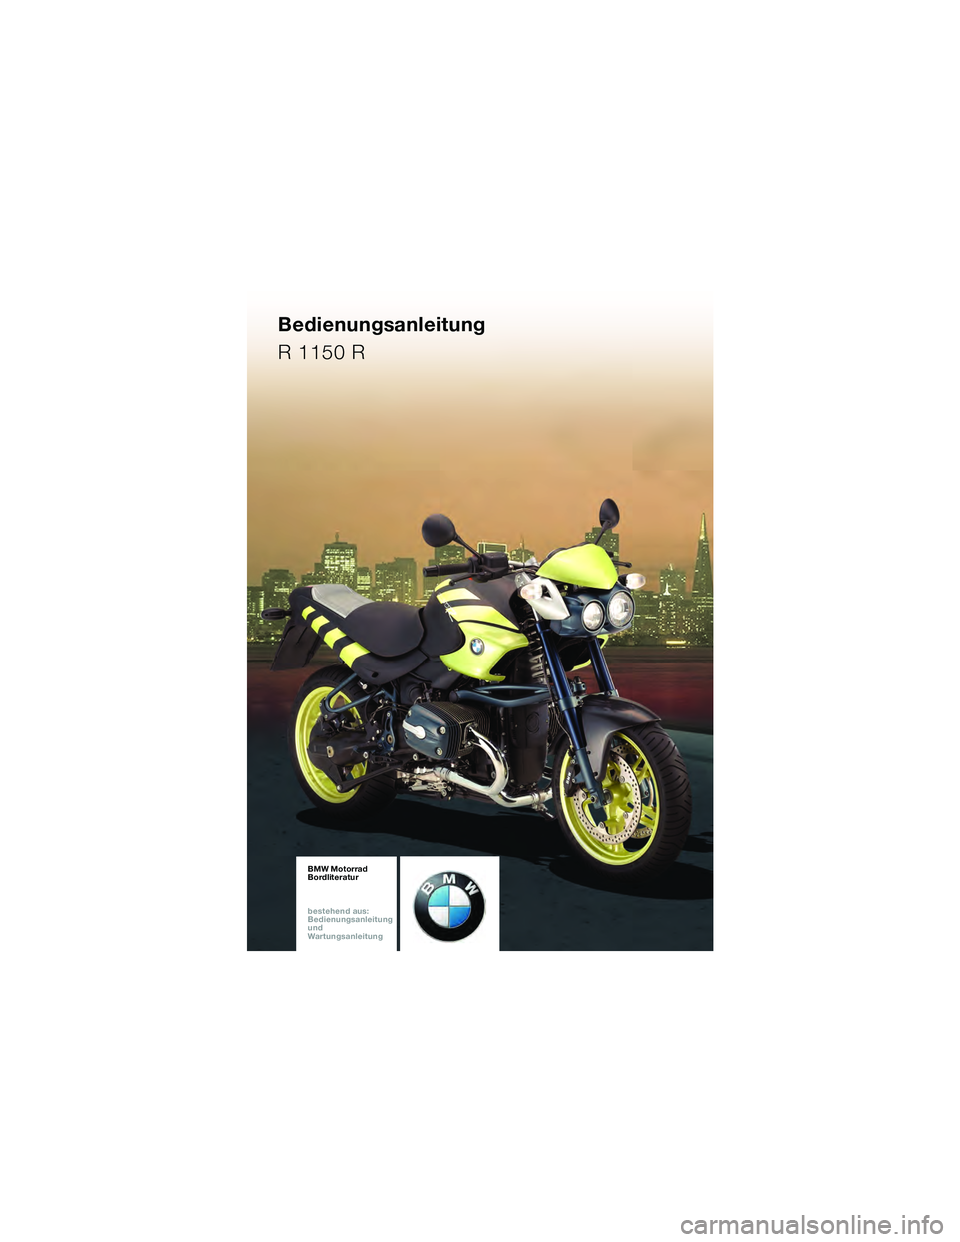 BMW MOTORRAD R 1150 R 2002  Betriebsanleitung (in German) BMW Motorrad
Bordliteratur
bestehen d aus:
Bedienungsanleitung
und
War tungsanleitung \b
.
5<

. 10R28funbkd2.book Seite 93  Dienstag, 5. April 2005  11:12 11 